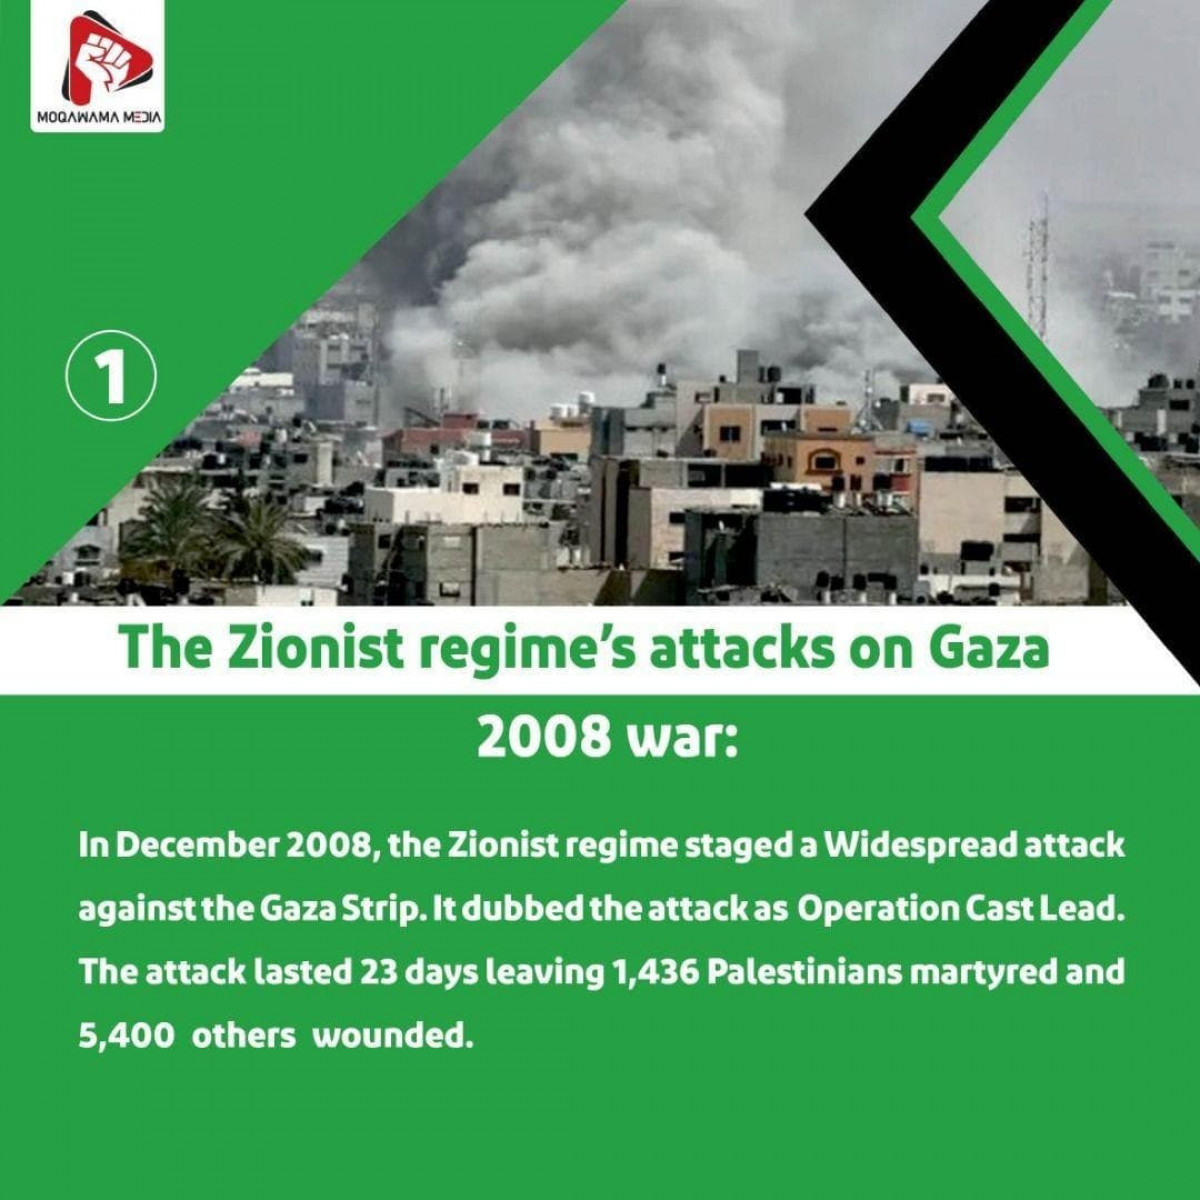 The Zionist regime's attacks on Gaza 2008 war